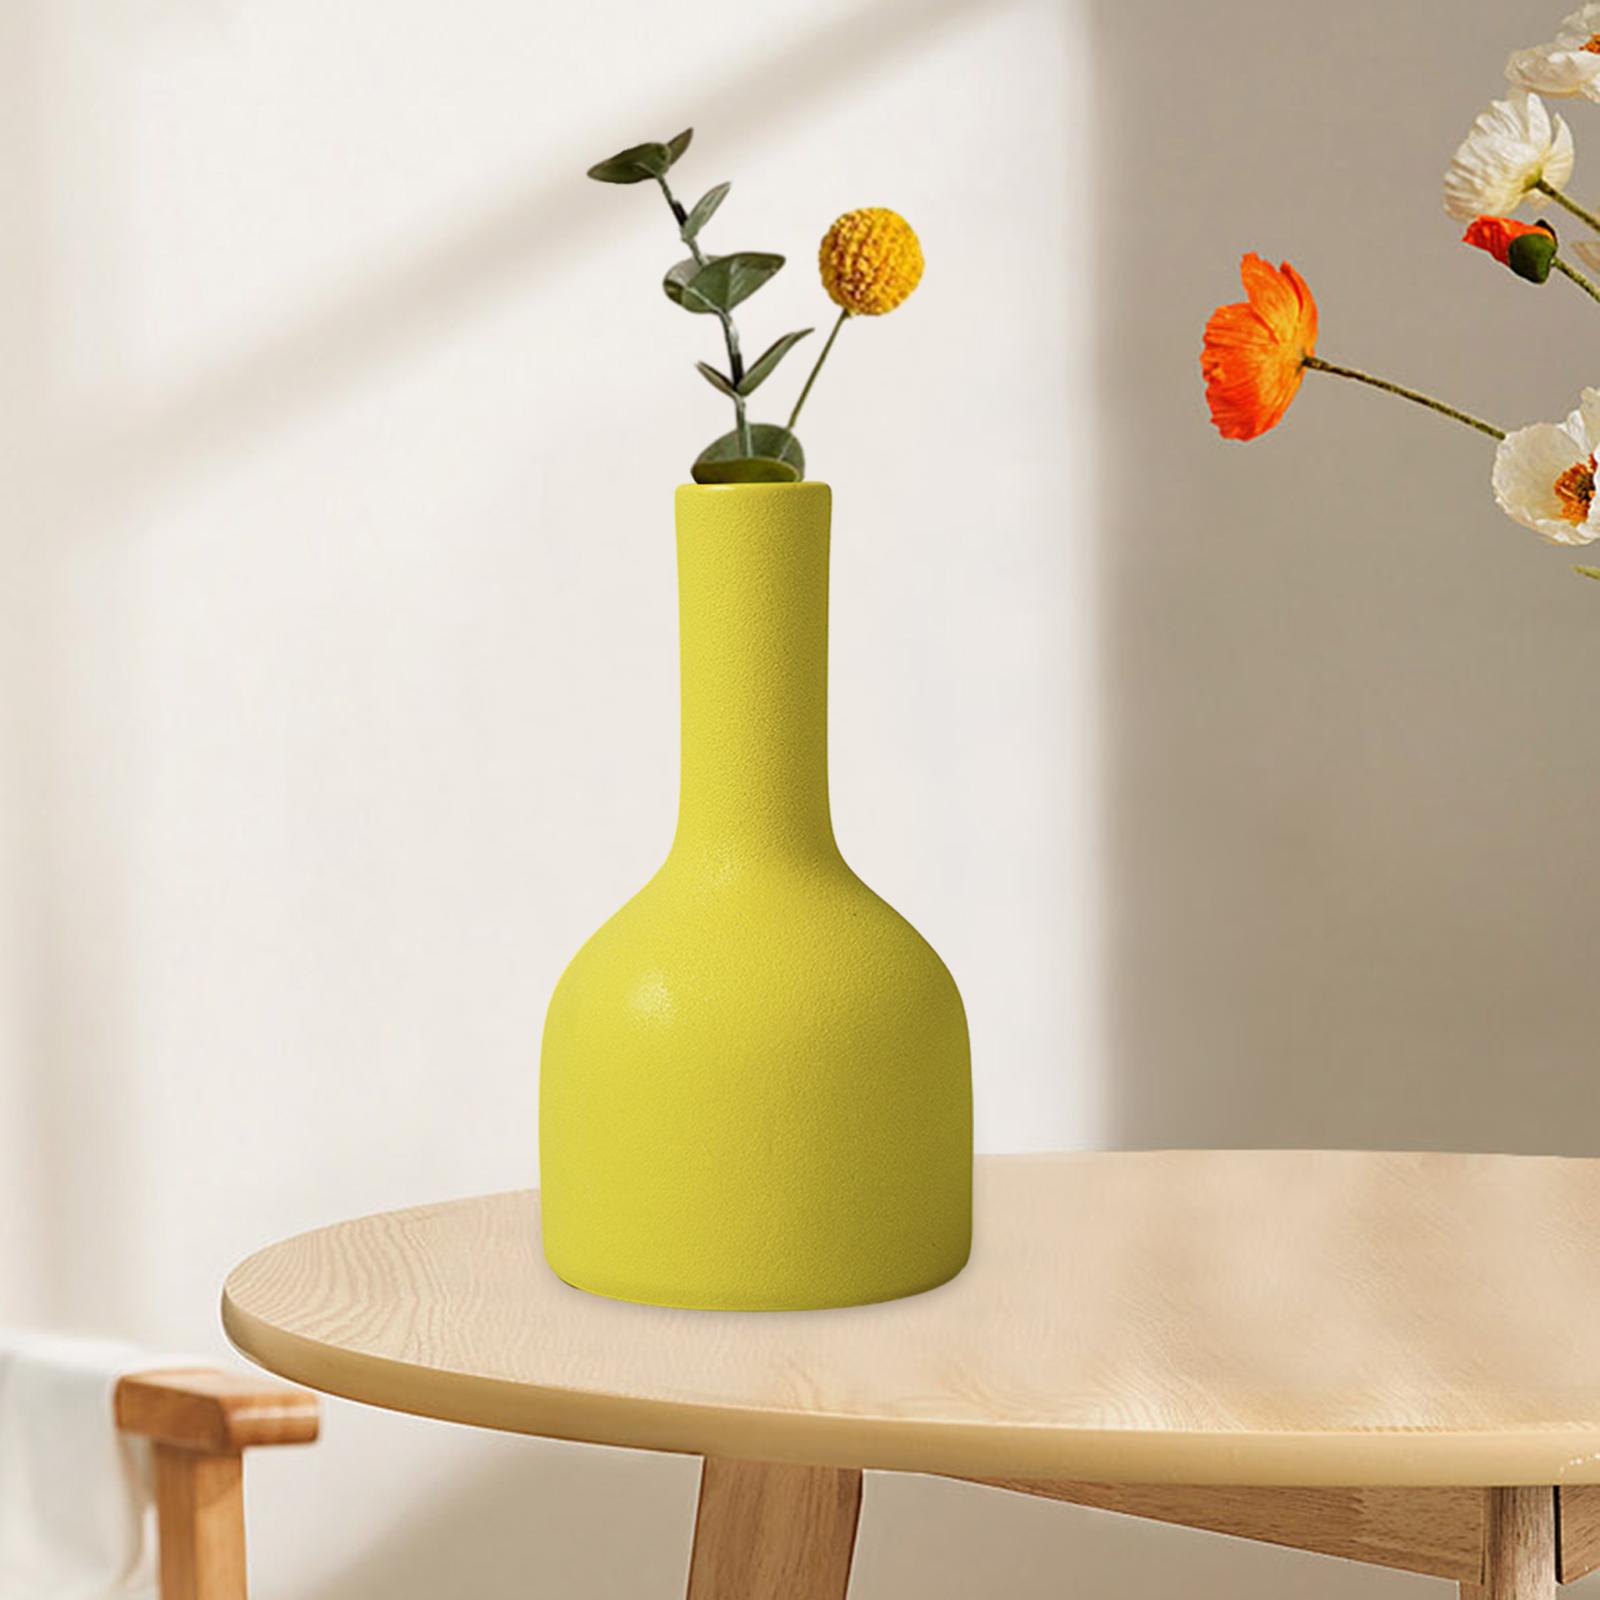 Ceramic Flower Vase Art Holder Ceramic Desktop Vase for Table Interior Party Style E